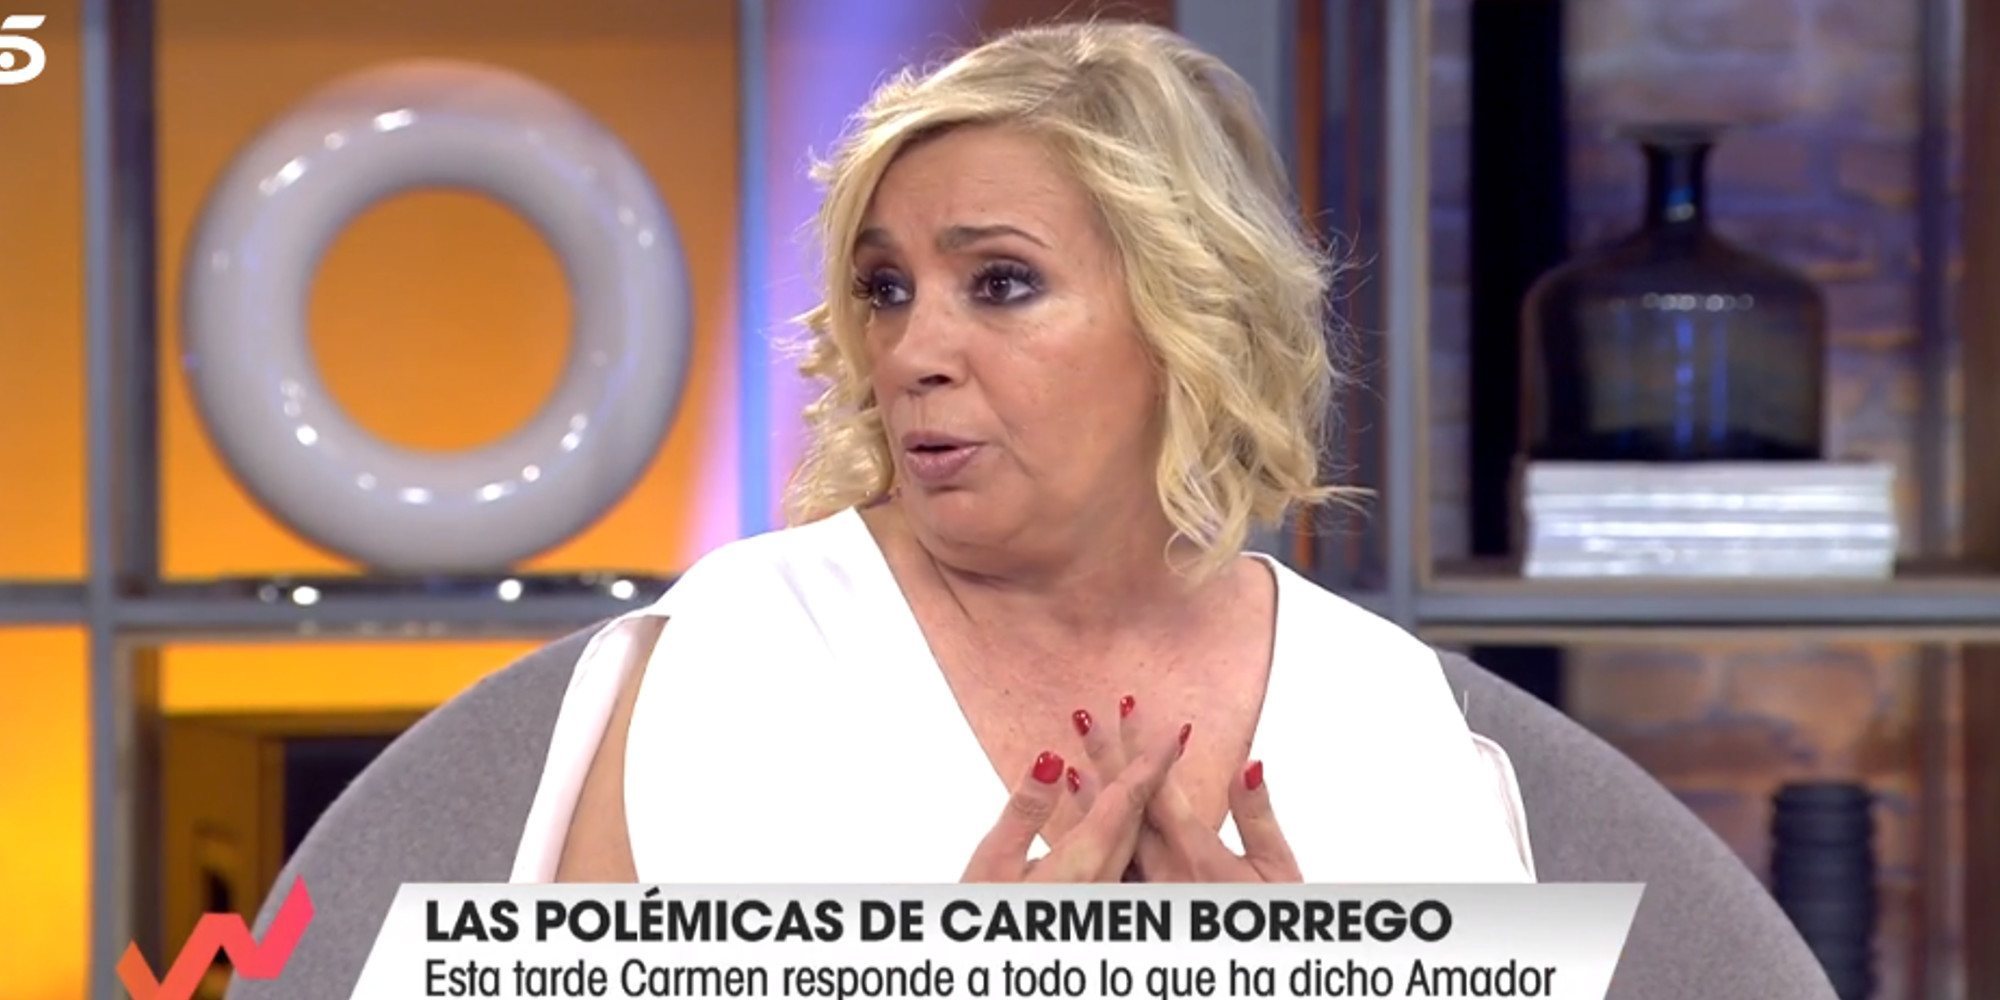 Carmen Borrego responde a los ataques de Amador Mohedano: "No me retracto en lo que dije"